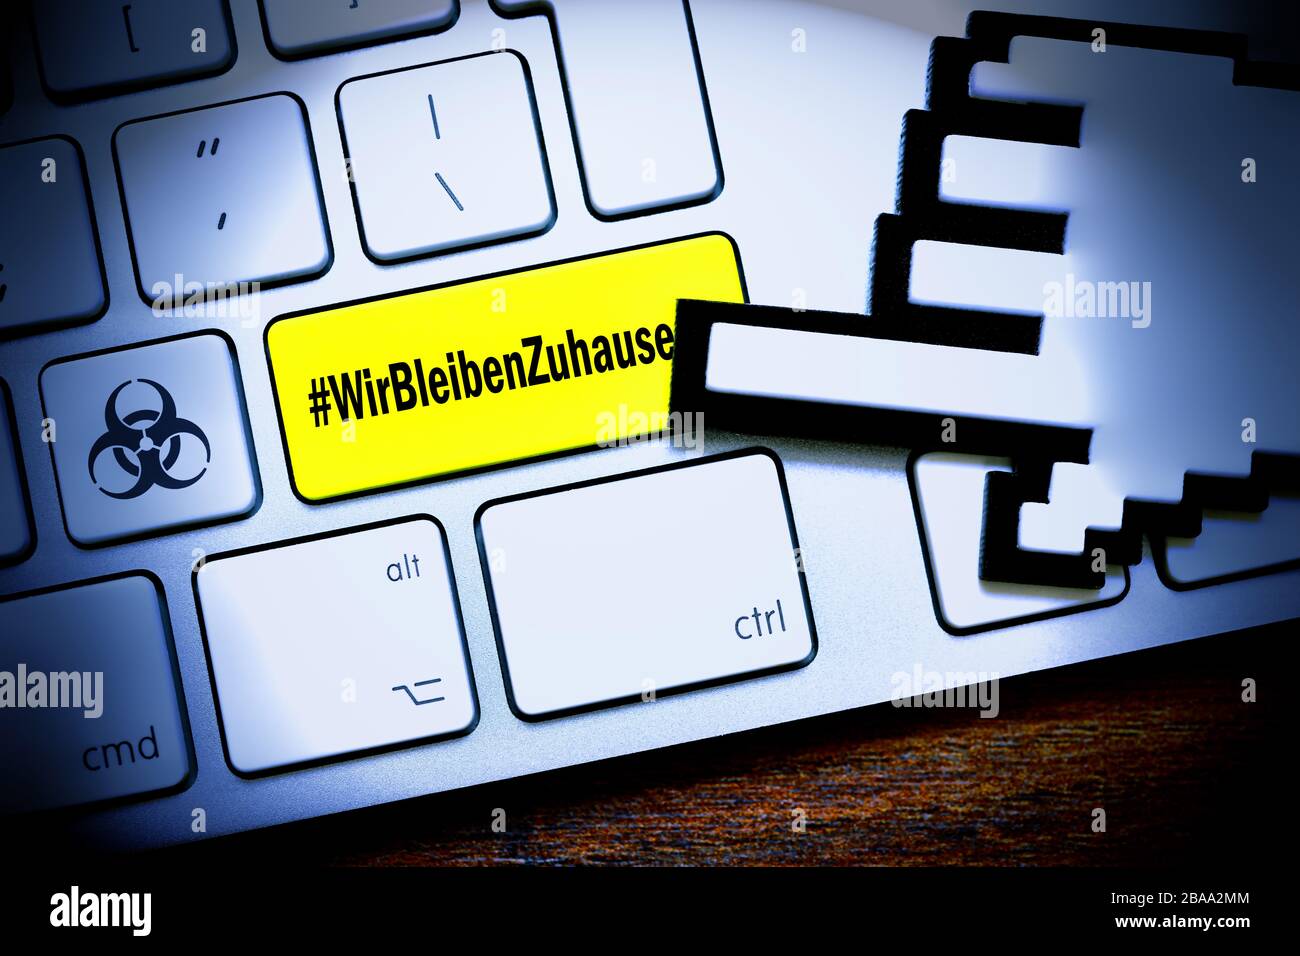 FOTOMONTAJE, clave de ordenador con el hashtag #WirBleibenZuhause y signo de peligro biológico, FOTOMONTAGE, Computertaste mit dem hashtag #WirBleibenZuhause Foto de stock